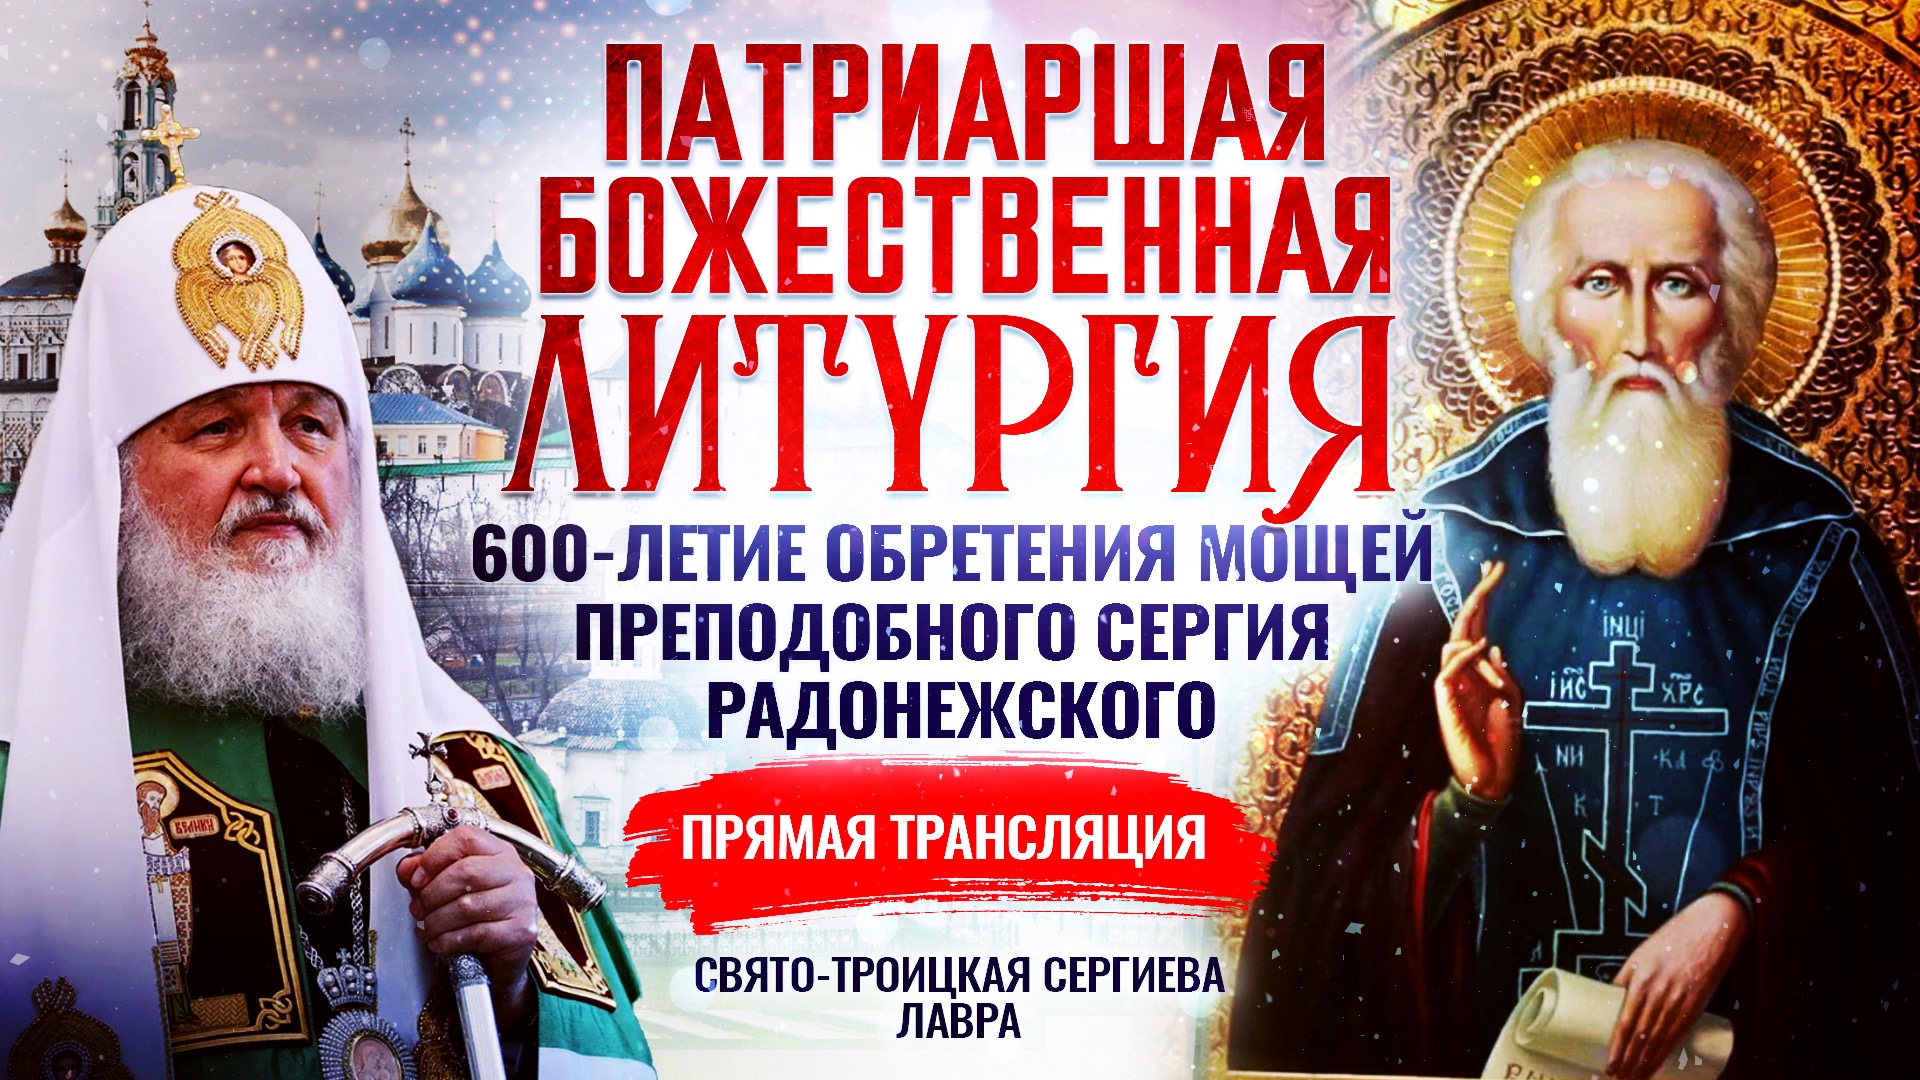 С праздником преподобного Сергия Радонежского